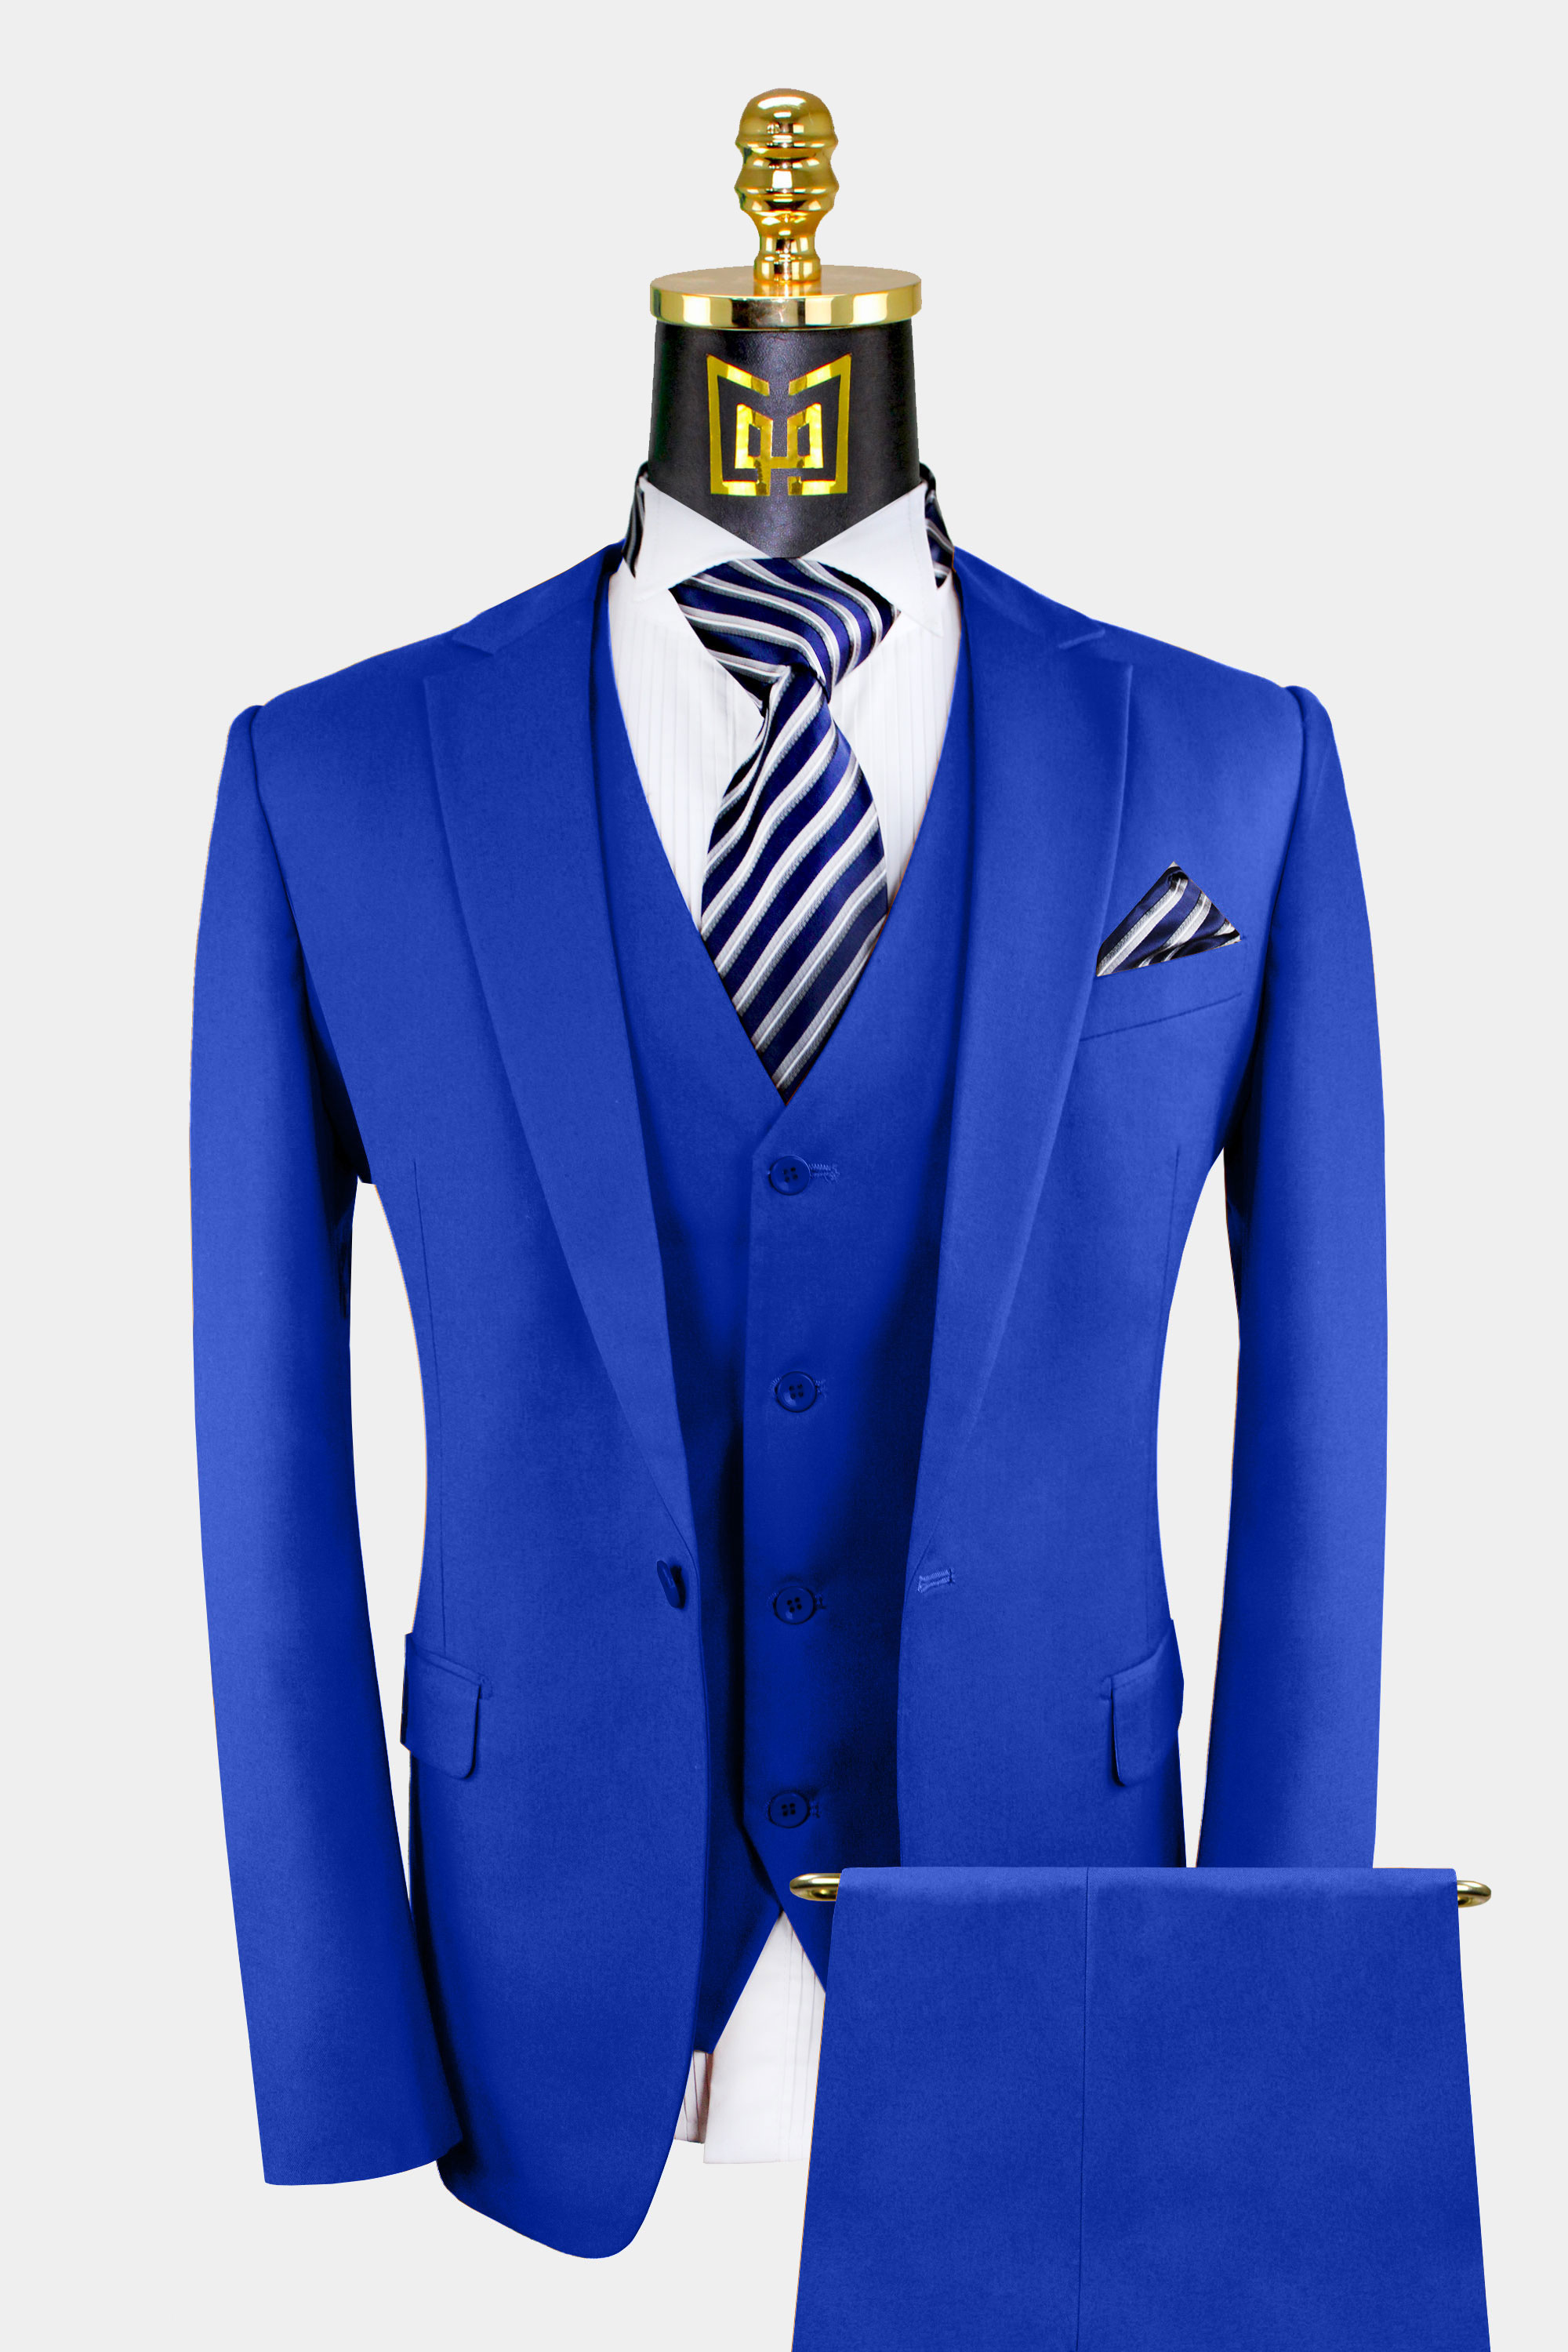 3 Piece Royal Blue Suit | Gentleman's Guru